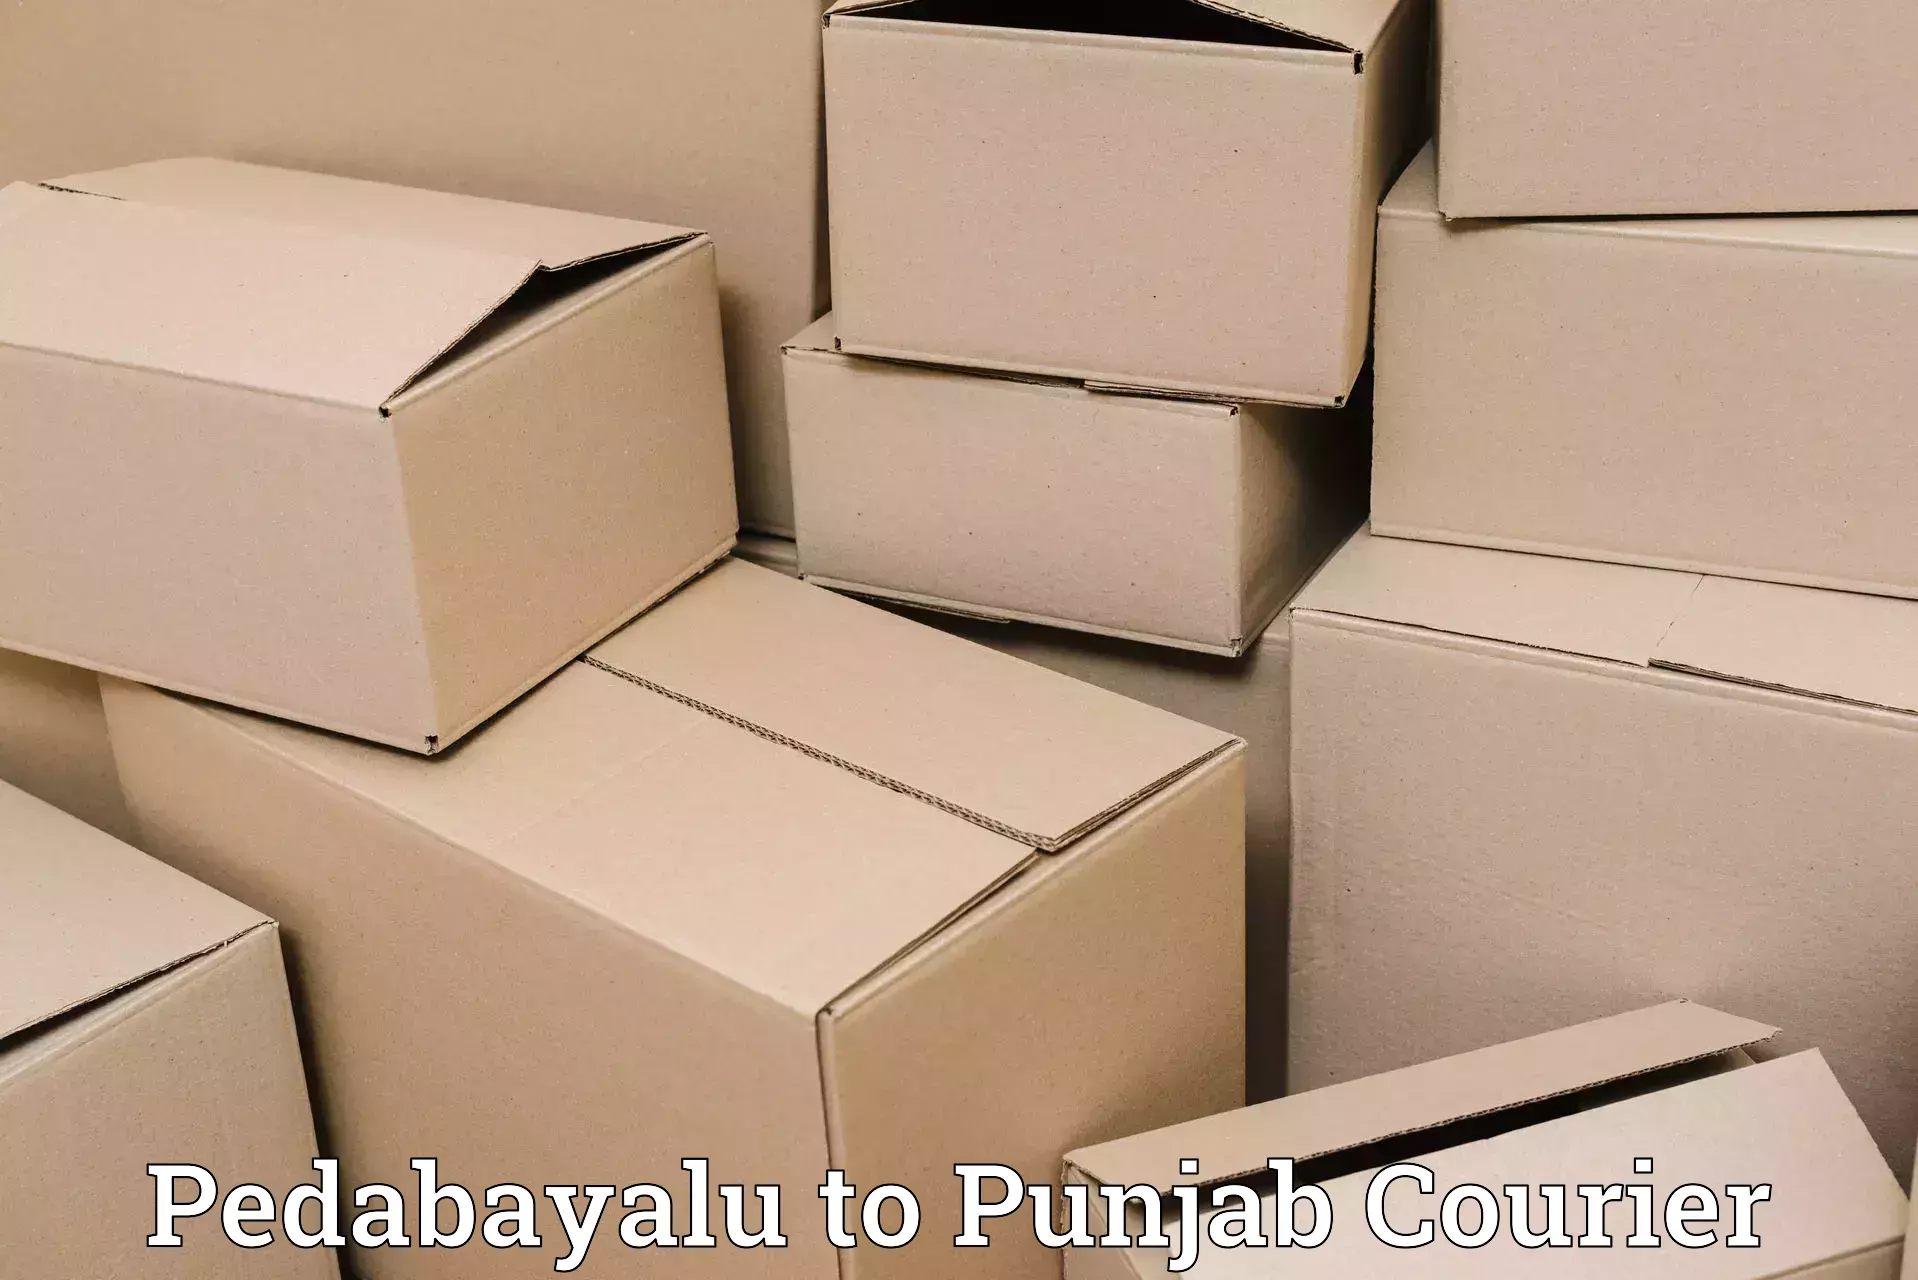 Holiday shipping services Pedabayalu to Bathinda